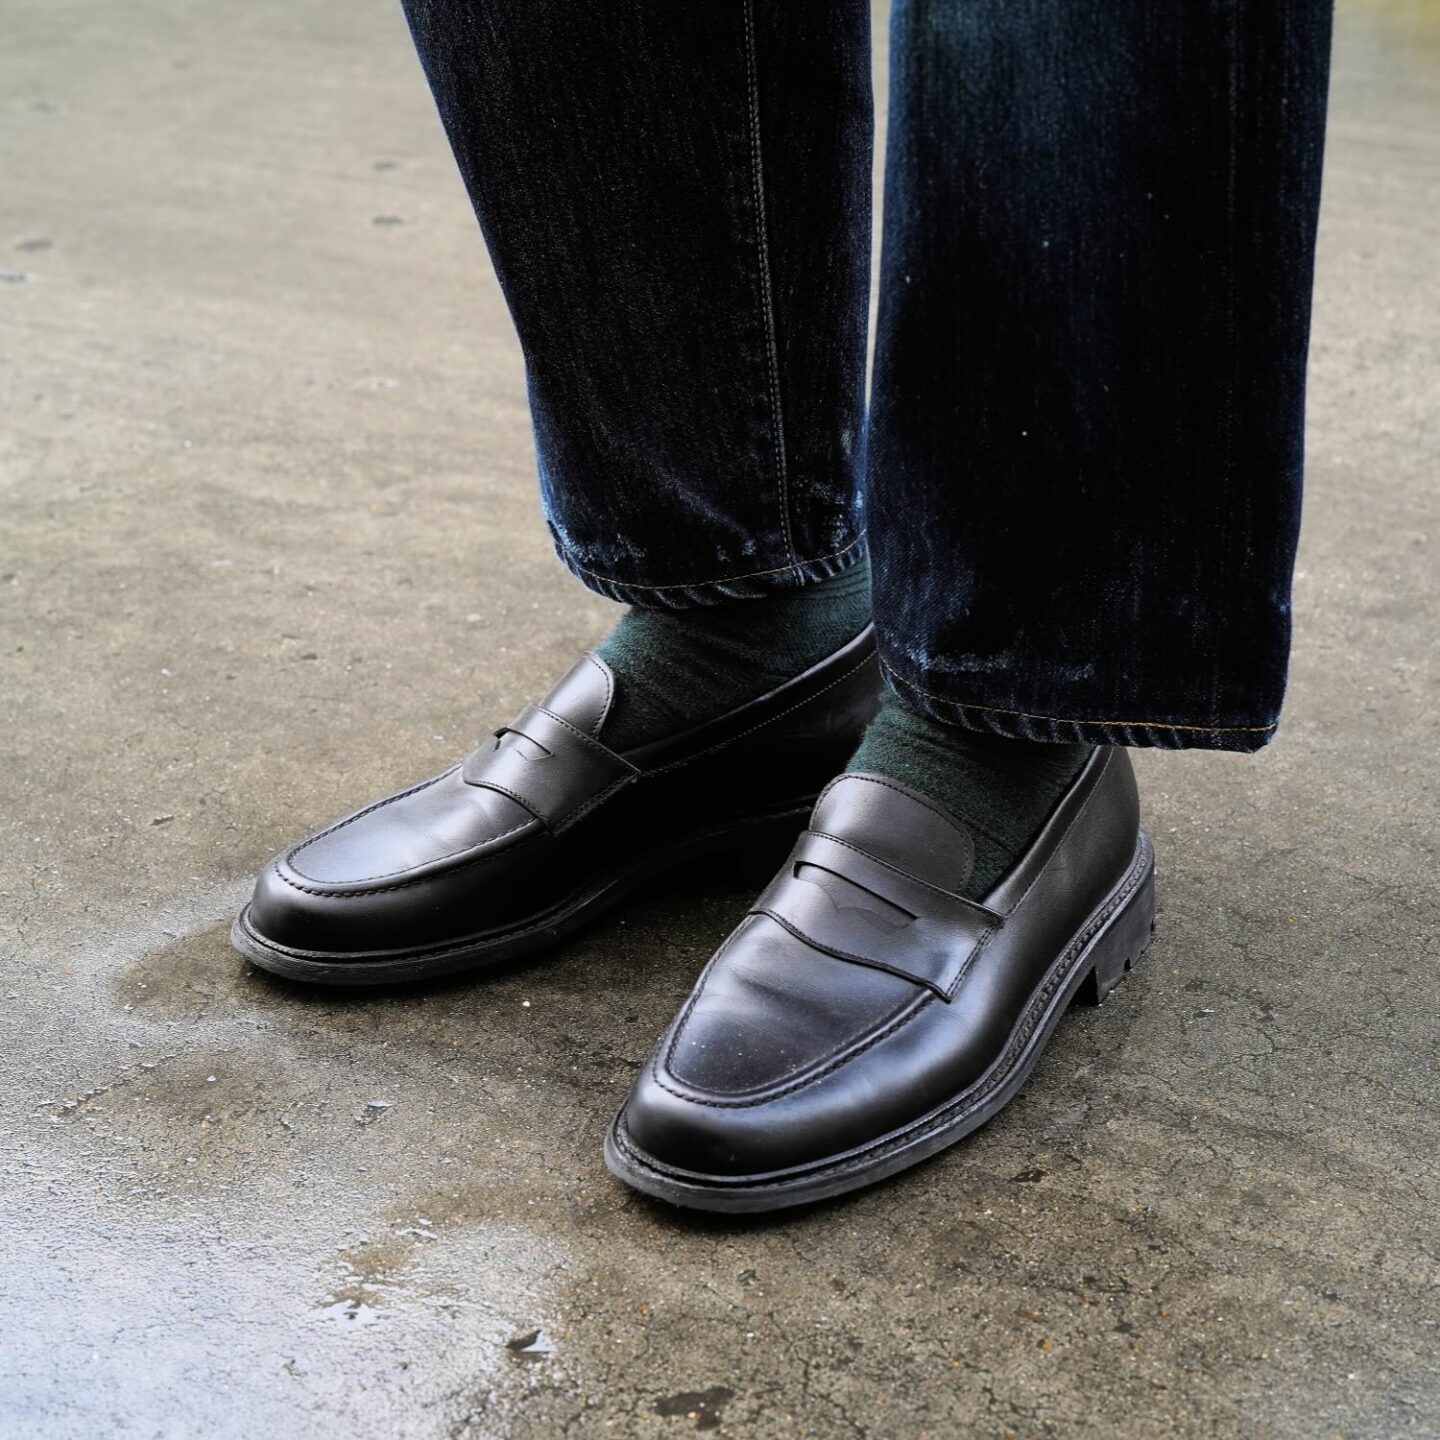 chaussettes royalties paris et mocassins penny loafers noir de la marque max sauveur